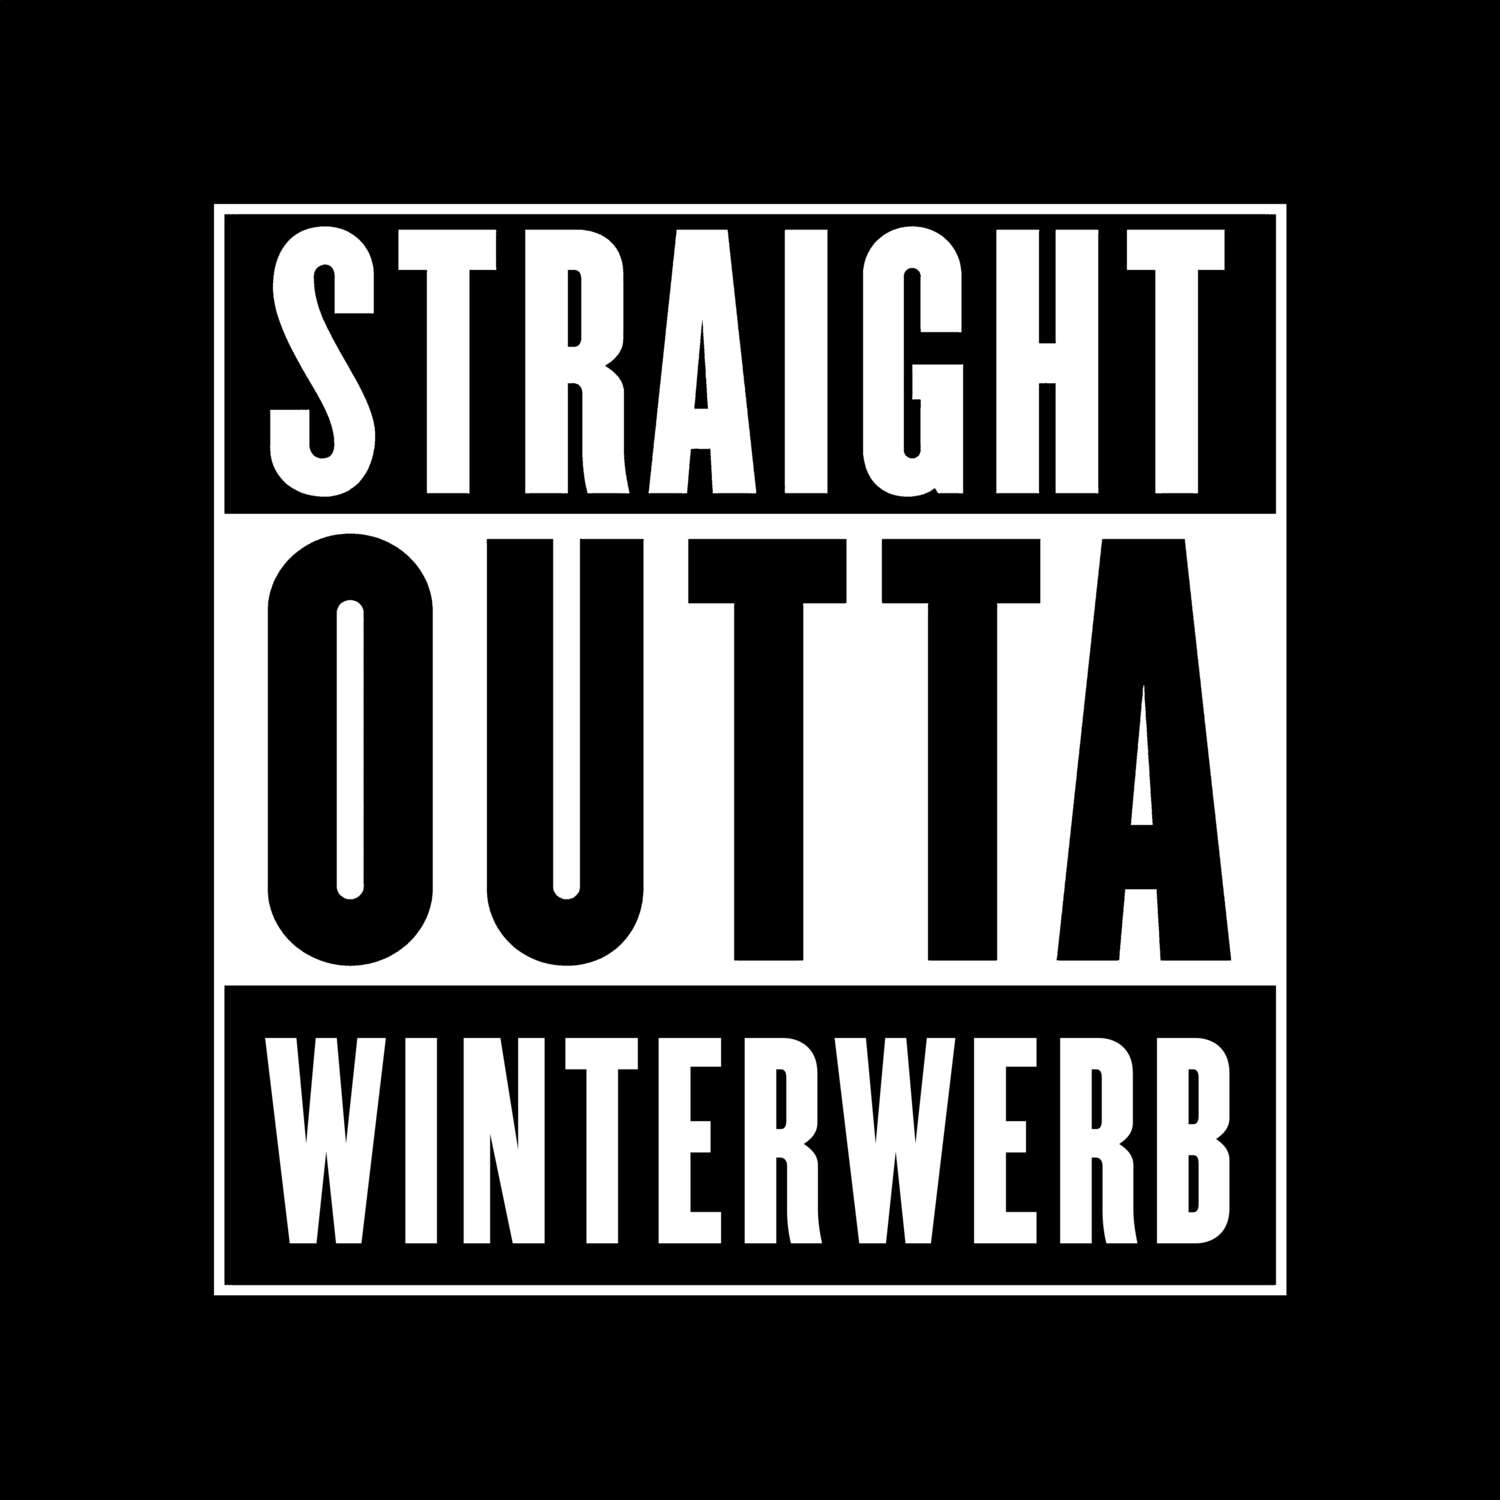 Winterwerb T-Shirt »Straight Outta«